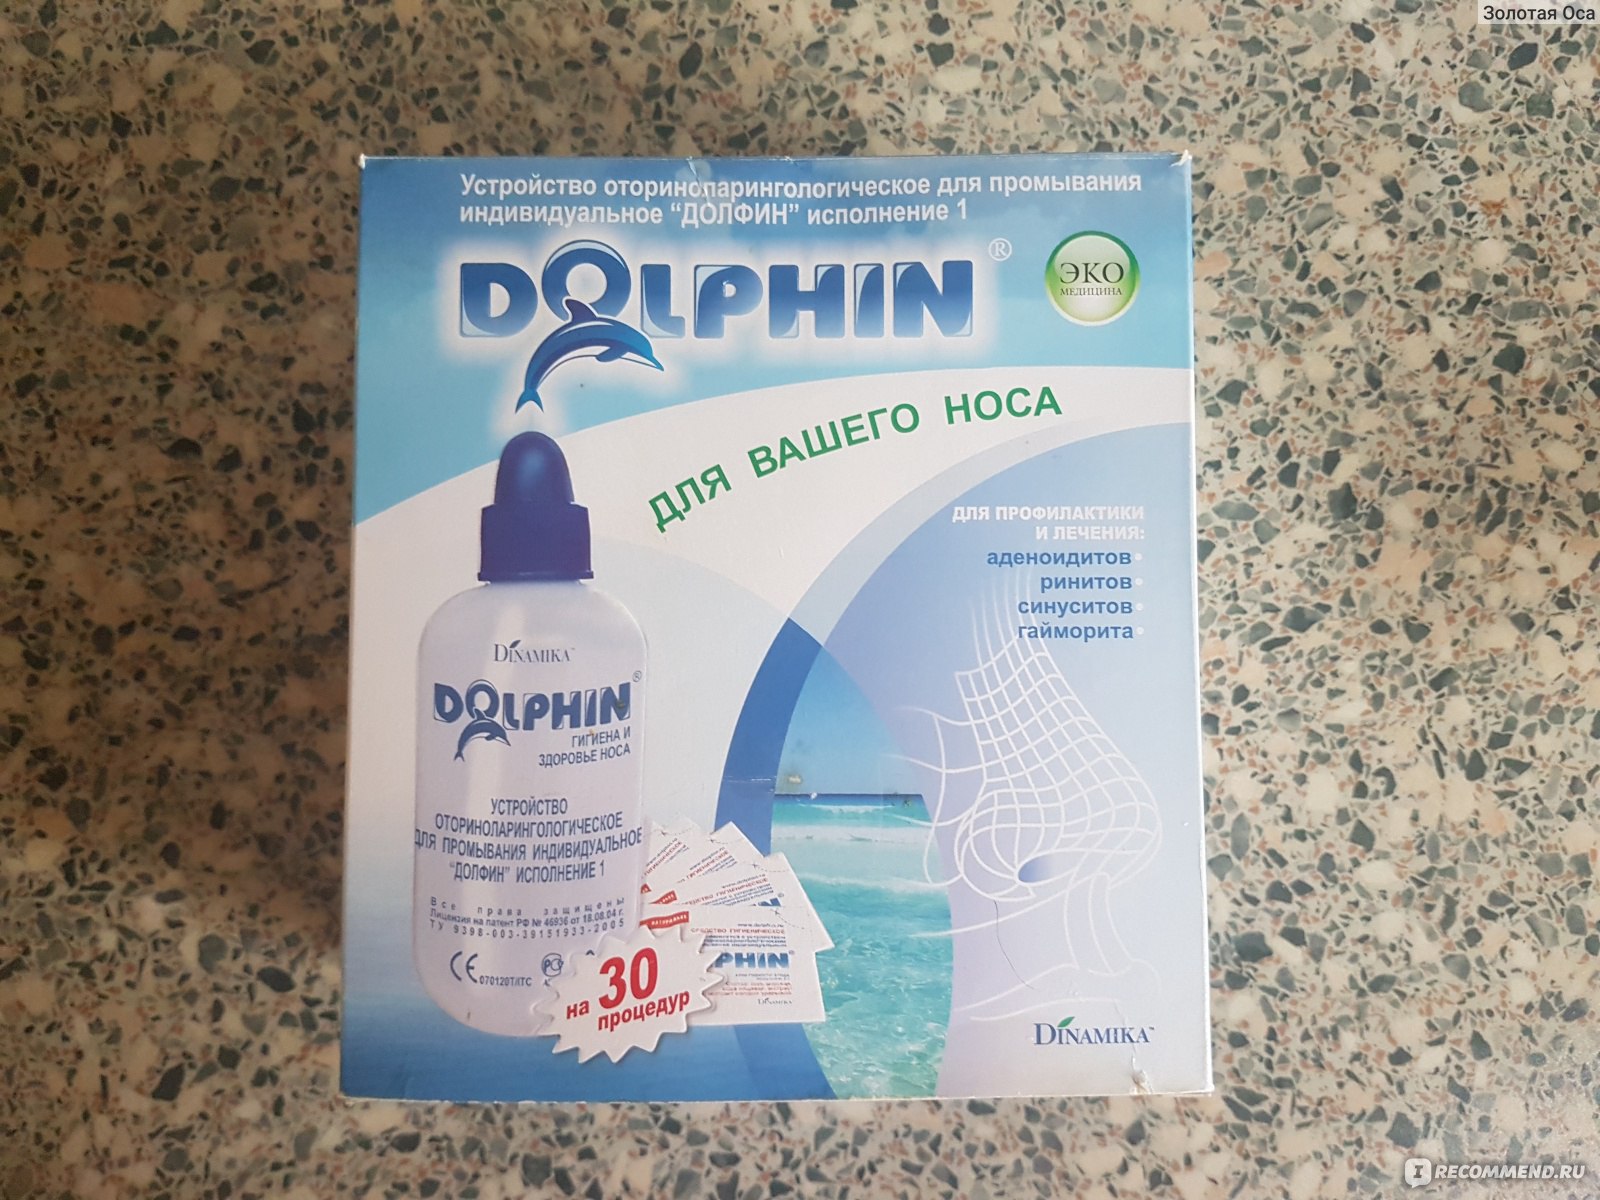 Долфин устройство для промывания носа для детей. Комплекс Долфин для промывания носа. Долфин лейка для промывания носа. Аппарат для промывания носа Долфин. Дельфин промывание носа.